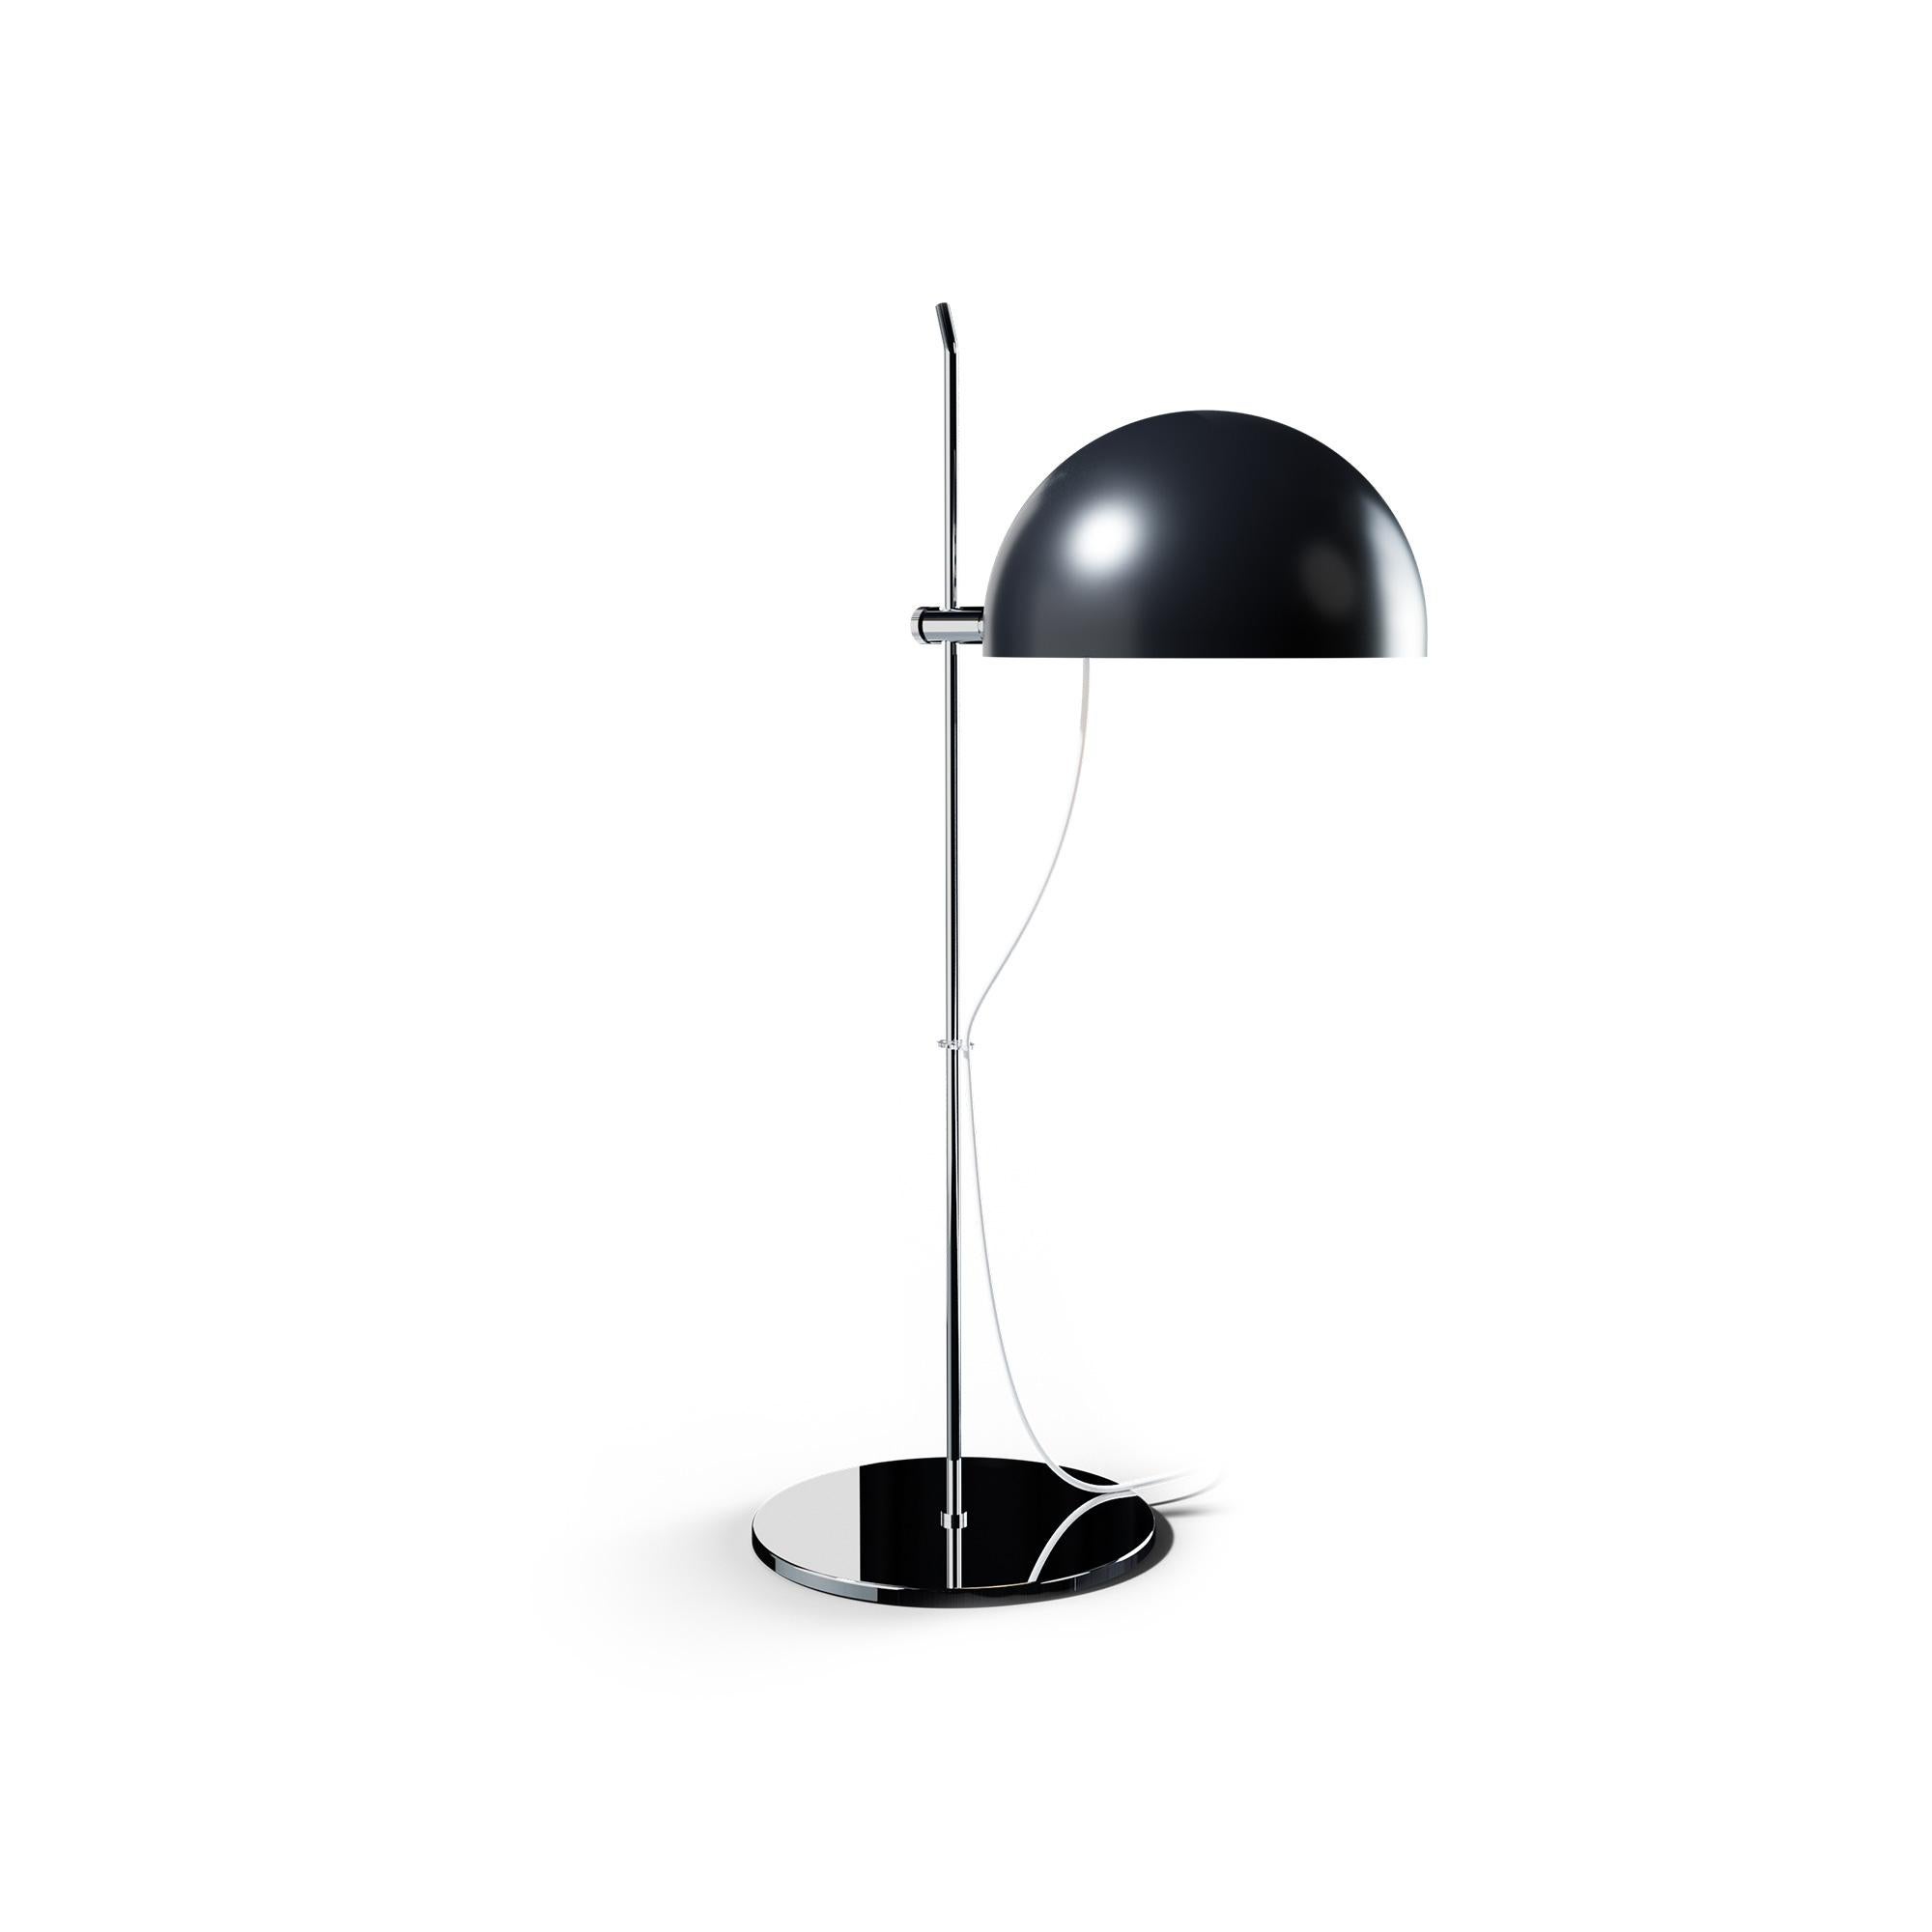 Alain Richard 'A22' Desk Lamp in Black for Disderot For Sale 10